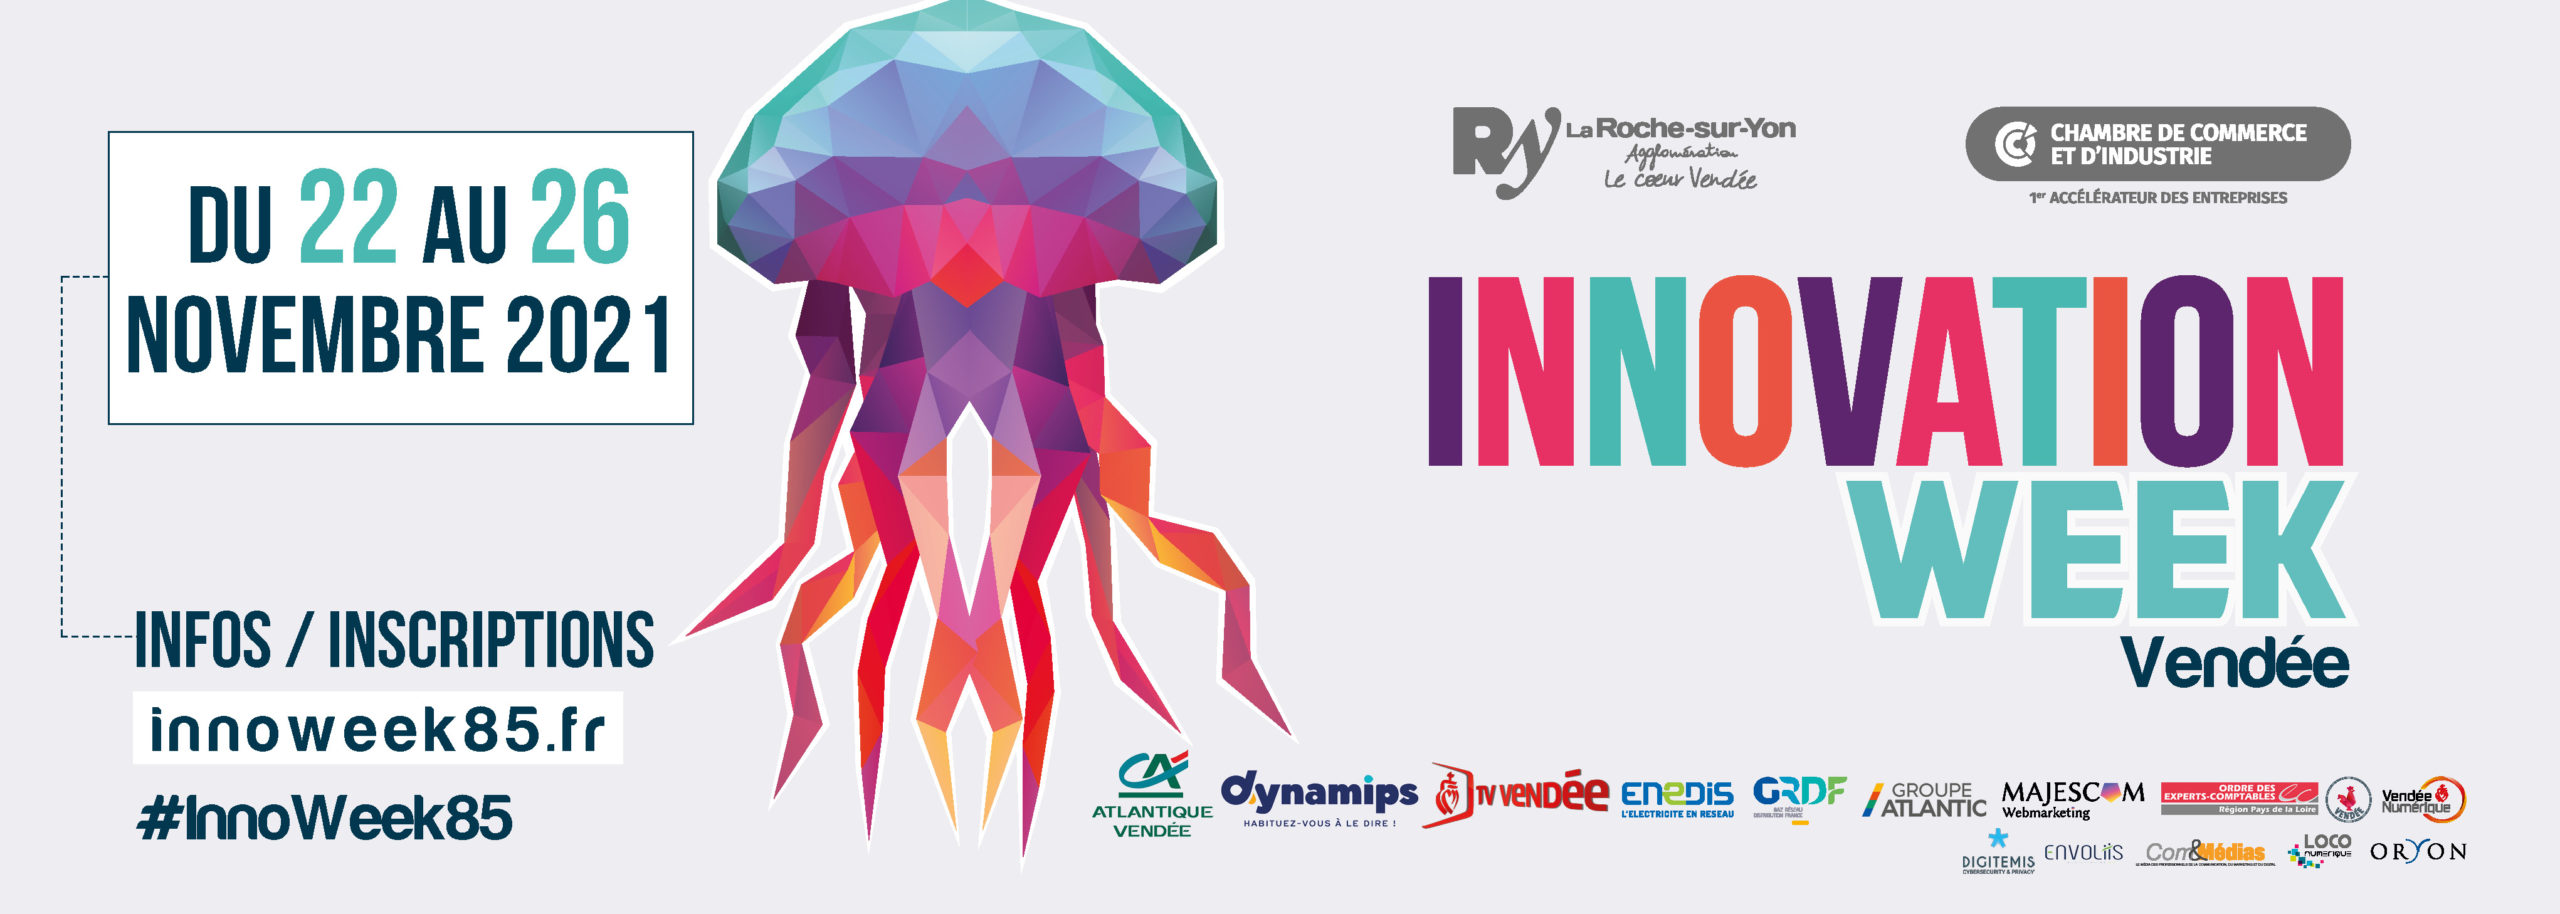 Soirée d’ouverture de l’Innovation Week Vendée en présence de Vincent LE CERF expert en I.A